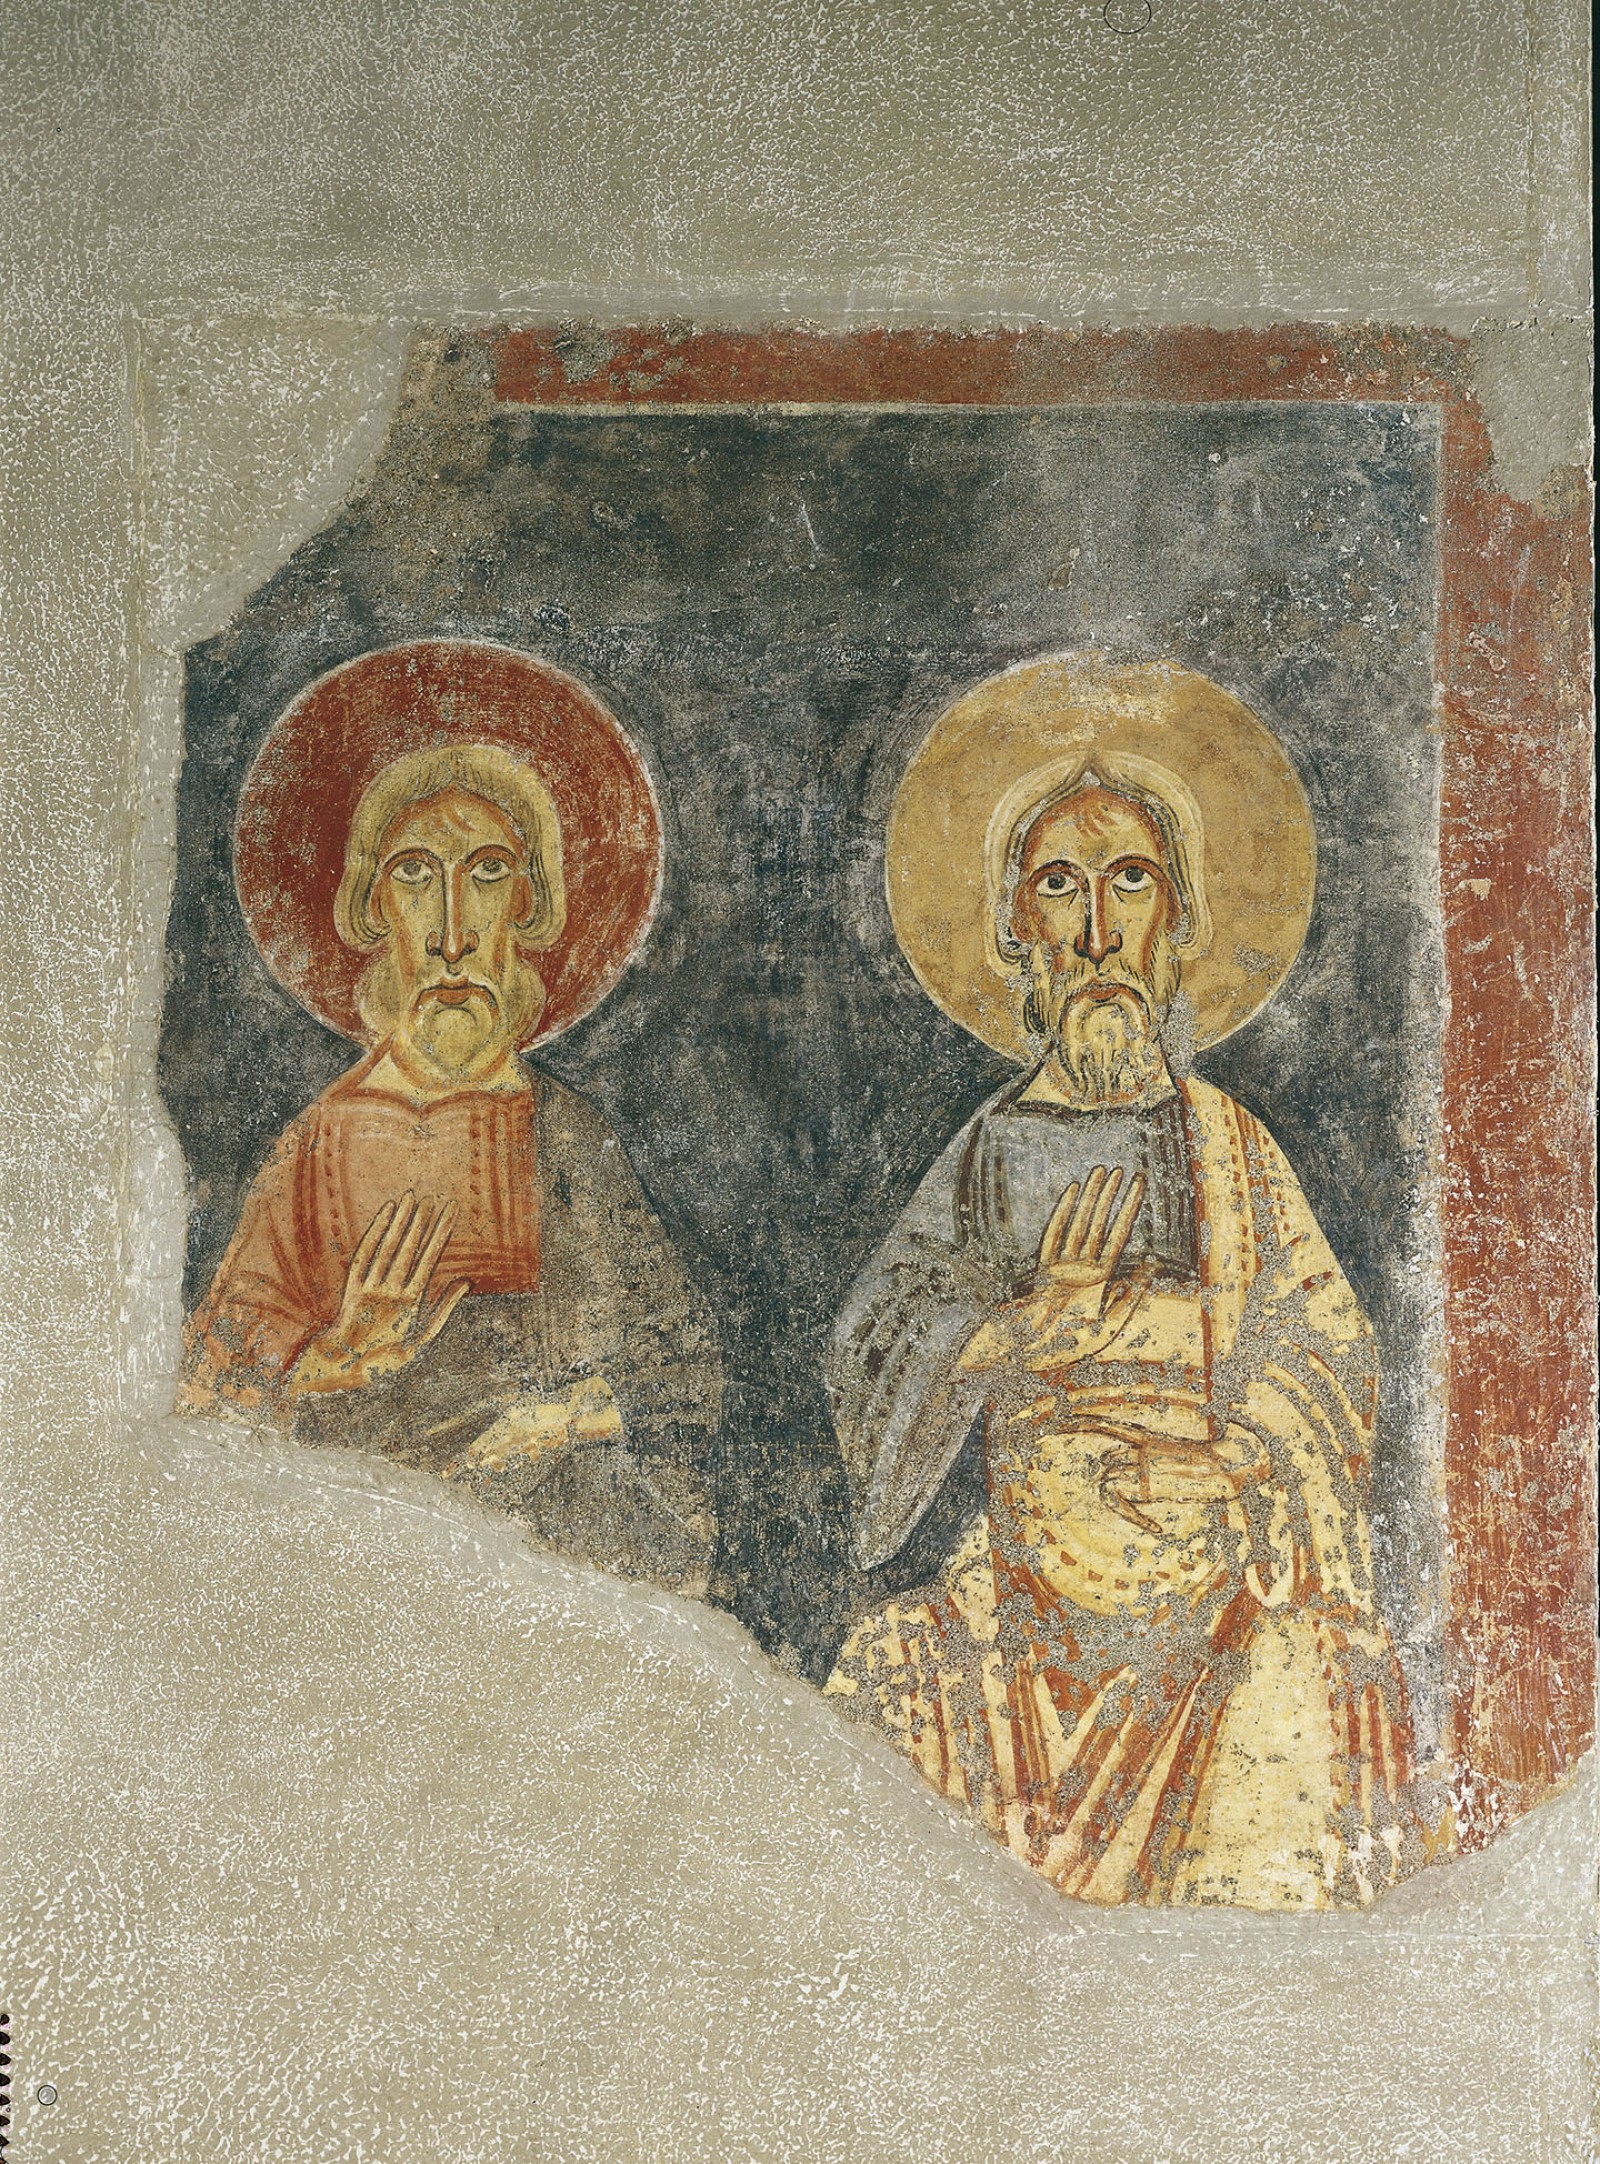 Figures de dos profetes de Sant Pere del  Burgal